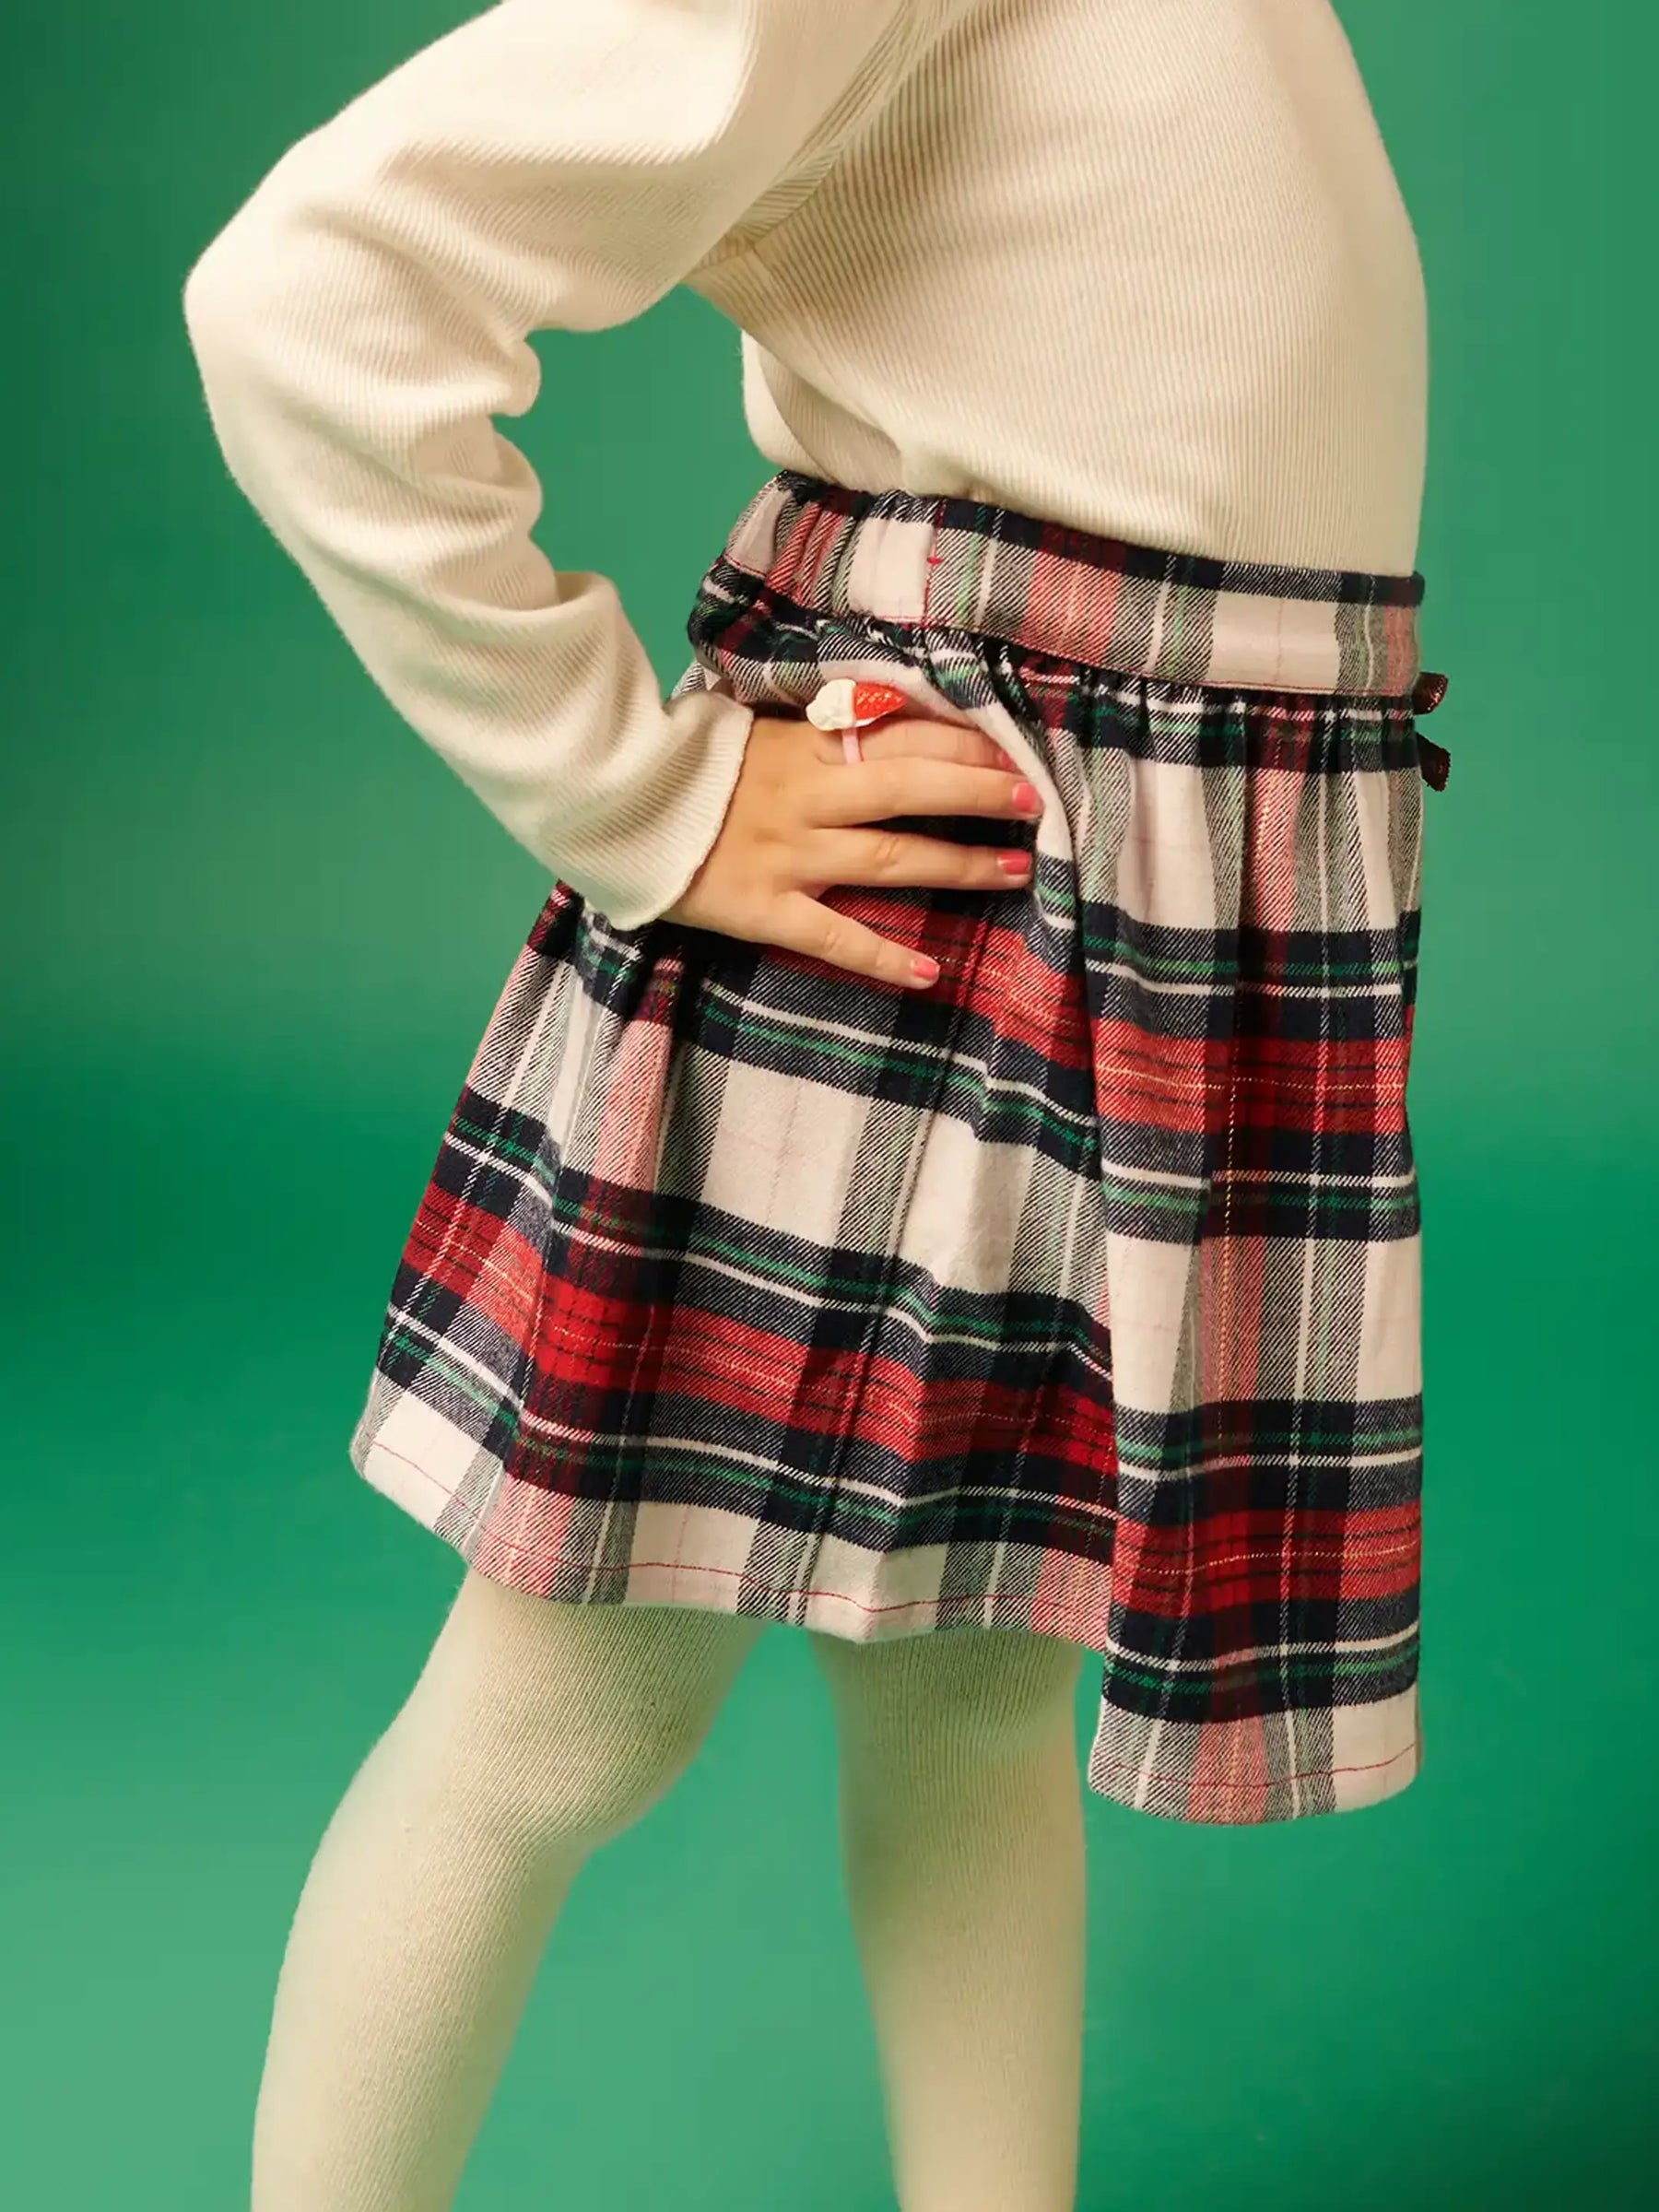 Festive Checkered Skirt Somersault